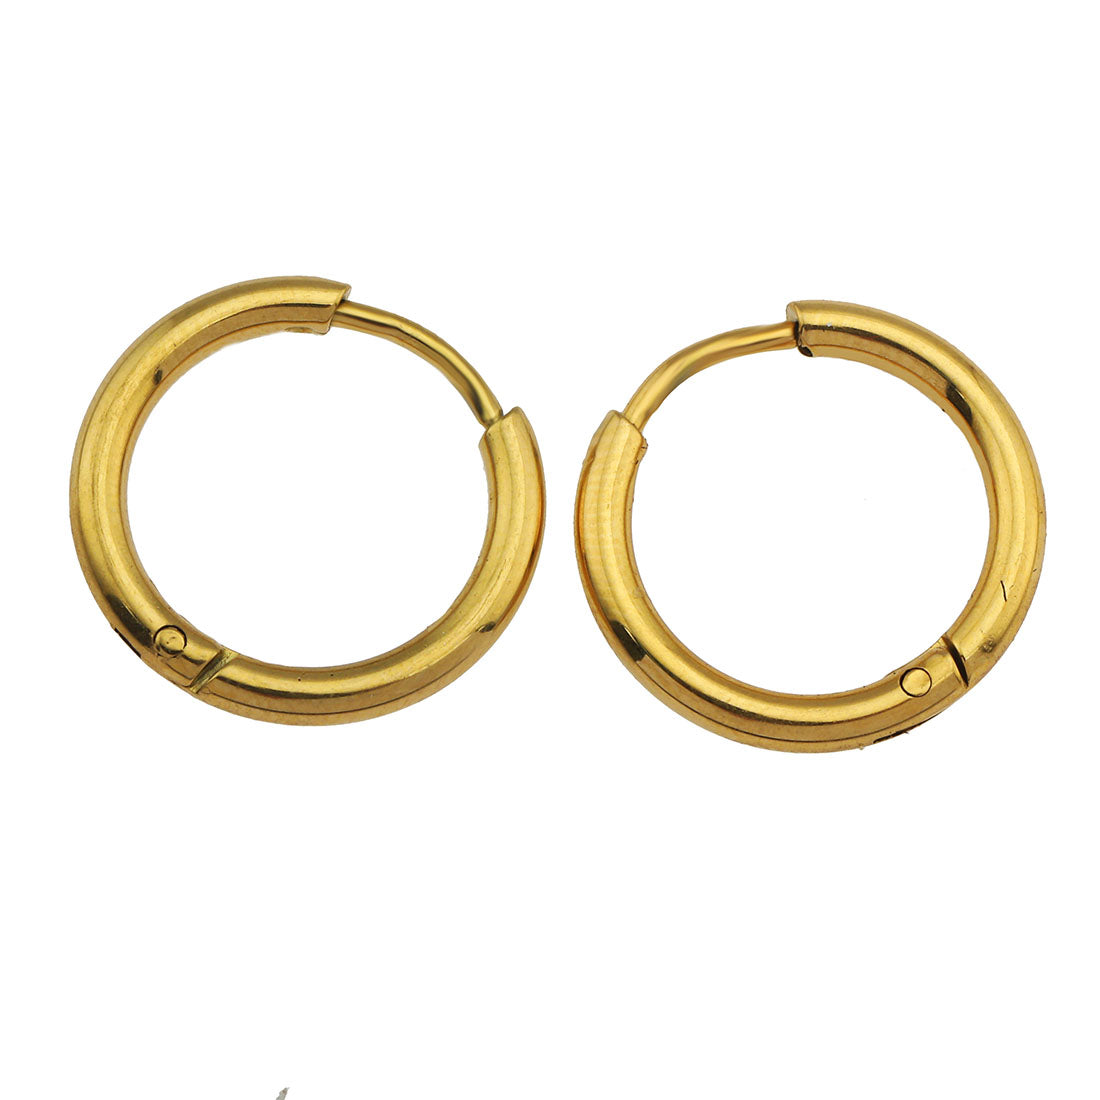 hackney_nine | hackneynine | GABRIELLA21069_Hoops | affordable_jewelry | dainty_jewelry | stainless_steel_jewelry | 18K_gold_jewelry | gold_dipped_jewelry | gold-jewelry | hoops_earrings | classic_hoops | gold_hoops